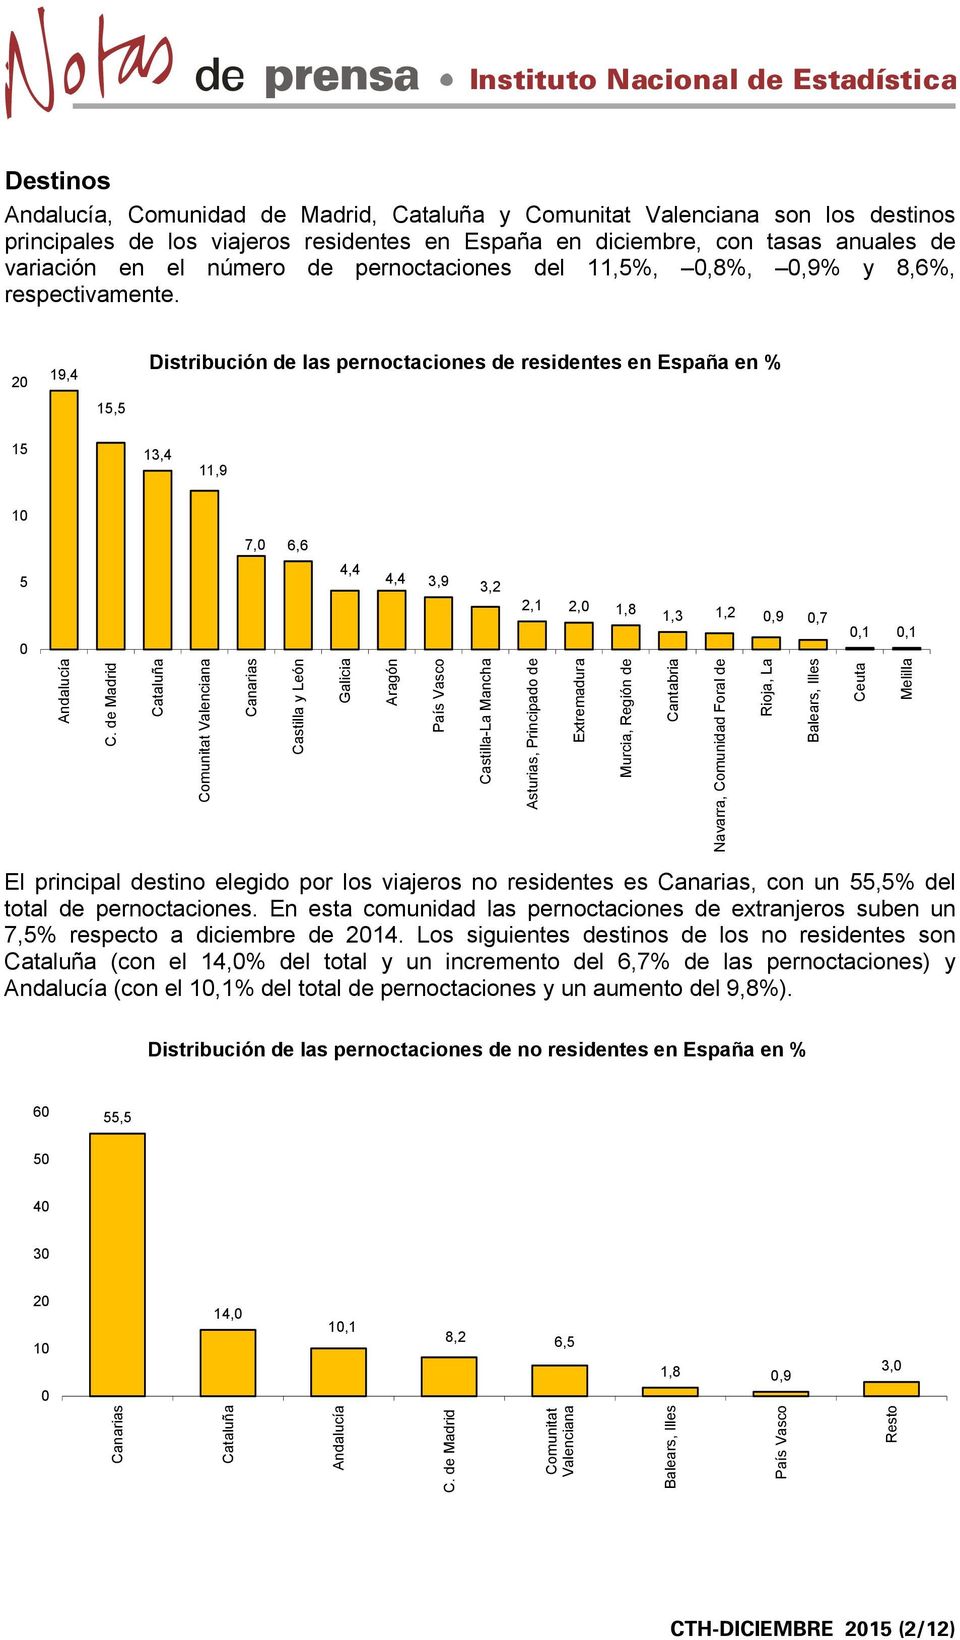 2 19,4 Distribución de las pernoctaciones de residentes en España en % 15,5 15 13,4 11,9 1 7, 6,6 5 4,4 4,4 3,9 3,2 2,1 2, 1,8 1,3 1,2,9,7,1,1 Andalucía C.